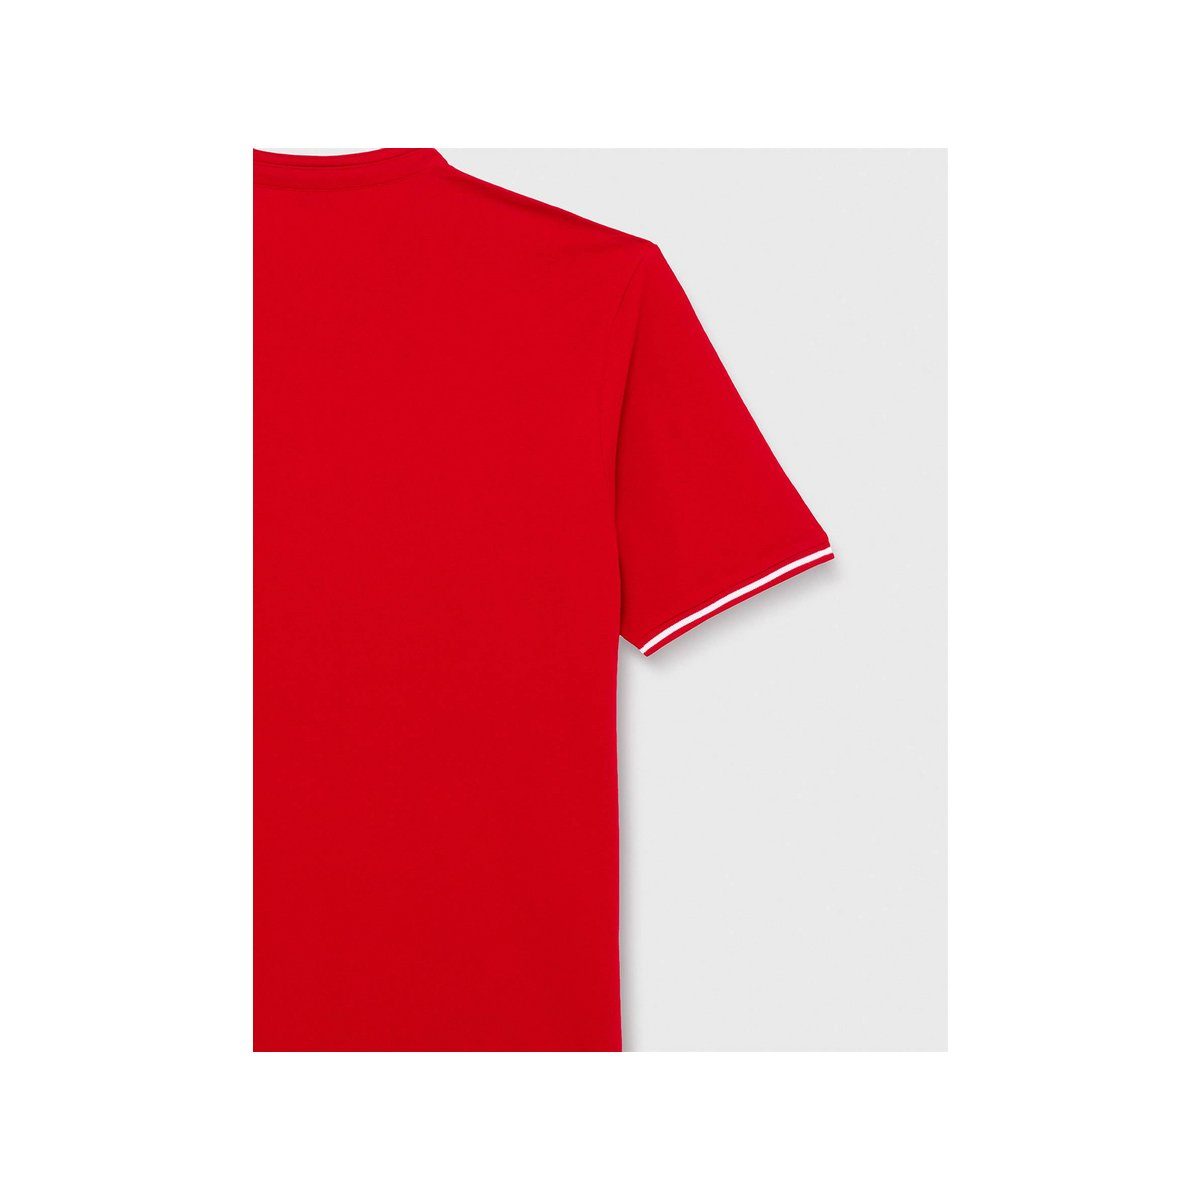 Daniel Hechter regular (1-tlg) rot T-Shirt fit